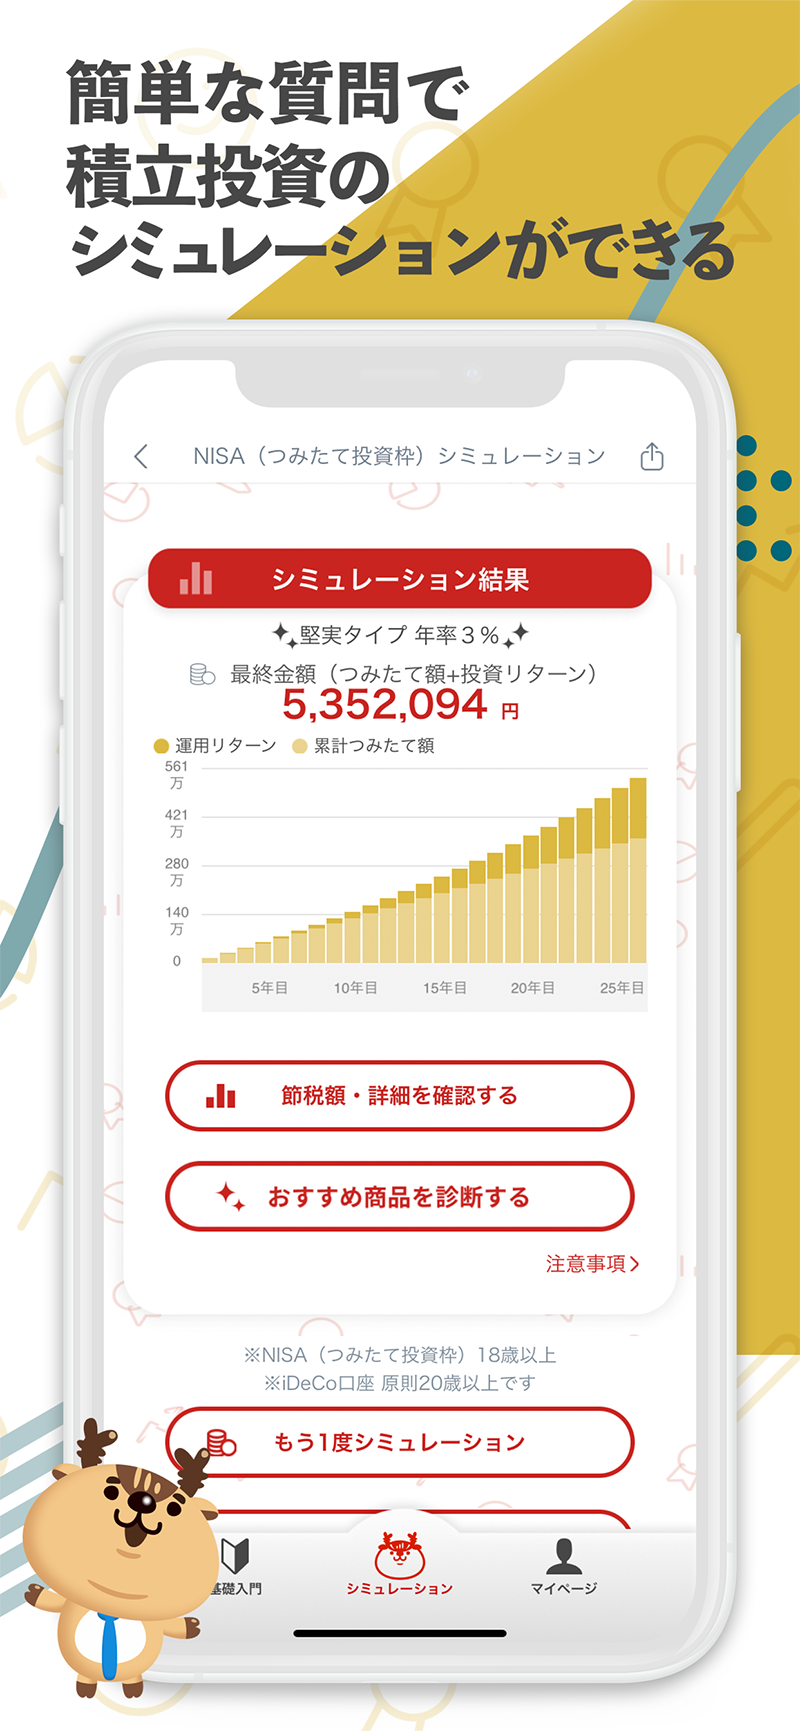 つみたて投資学習アプリ Powered by トウシカ2